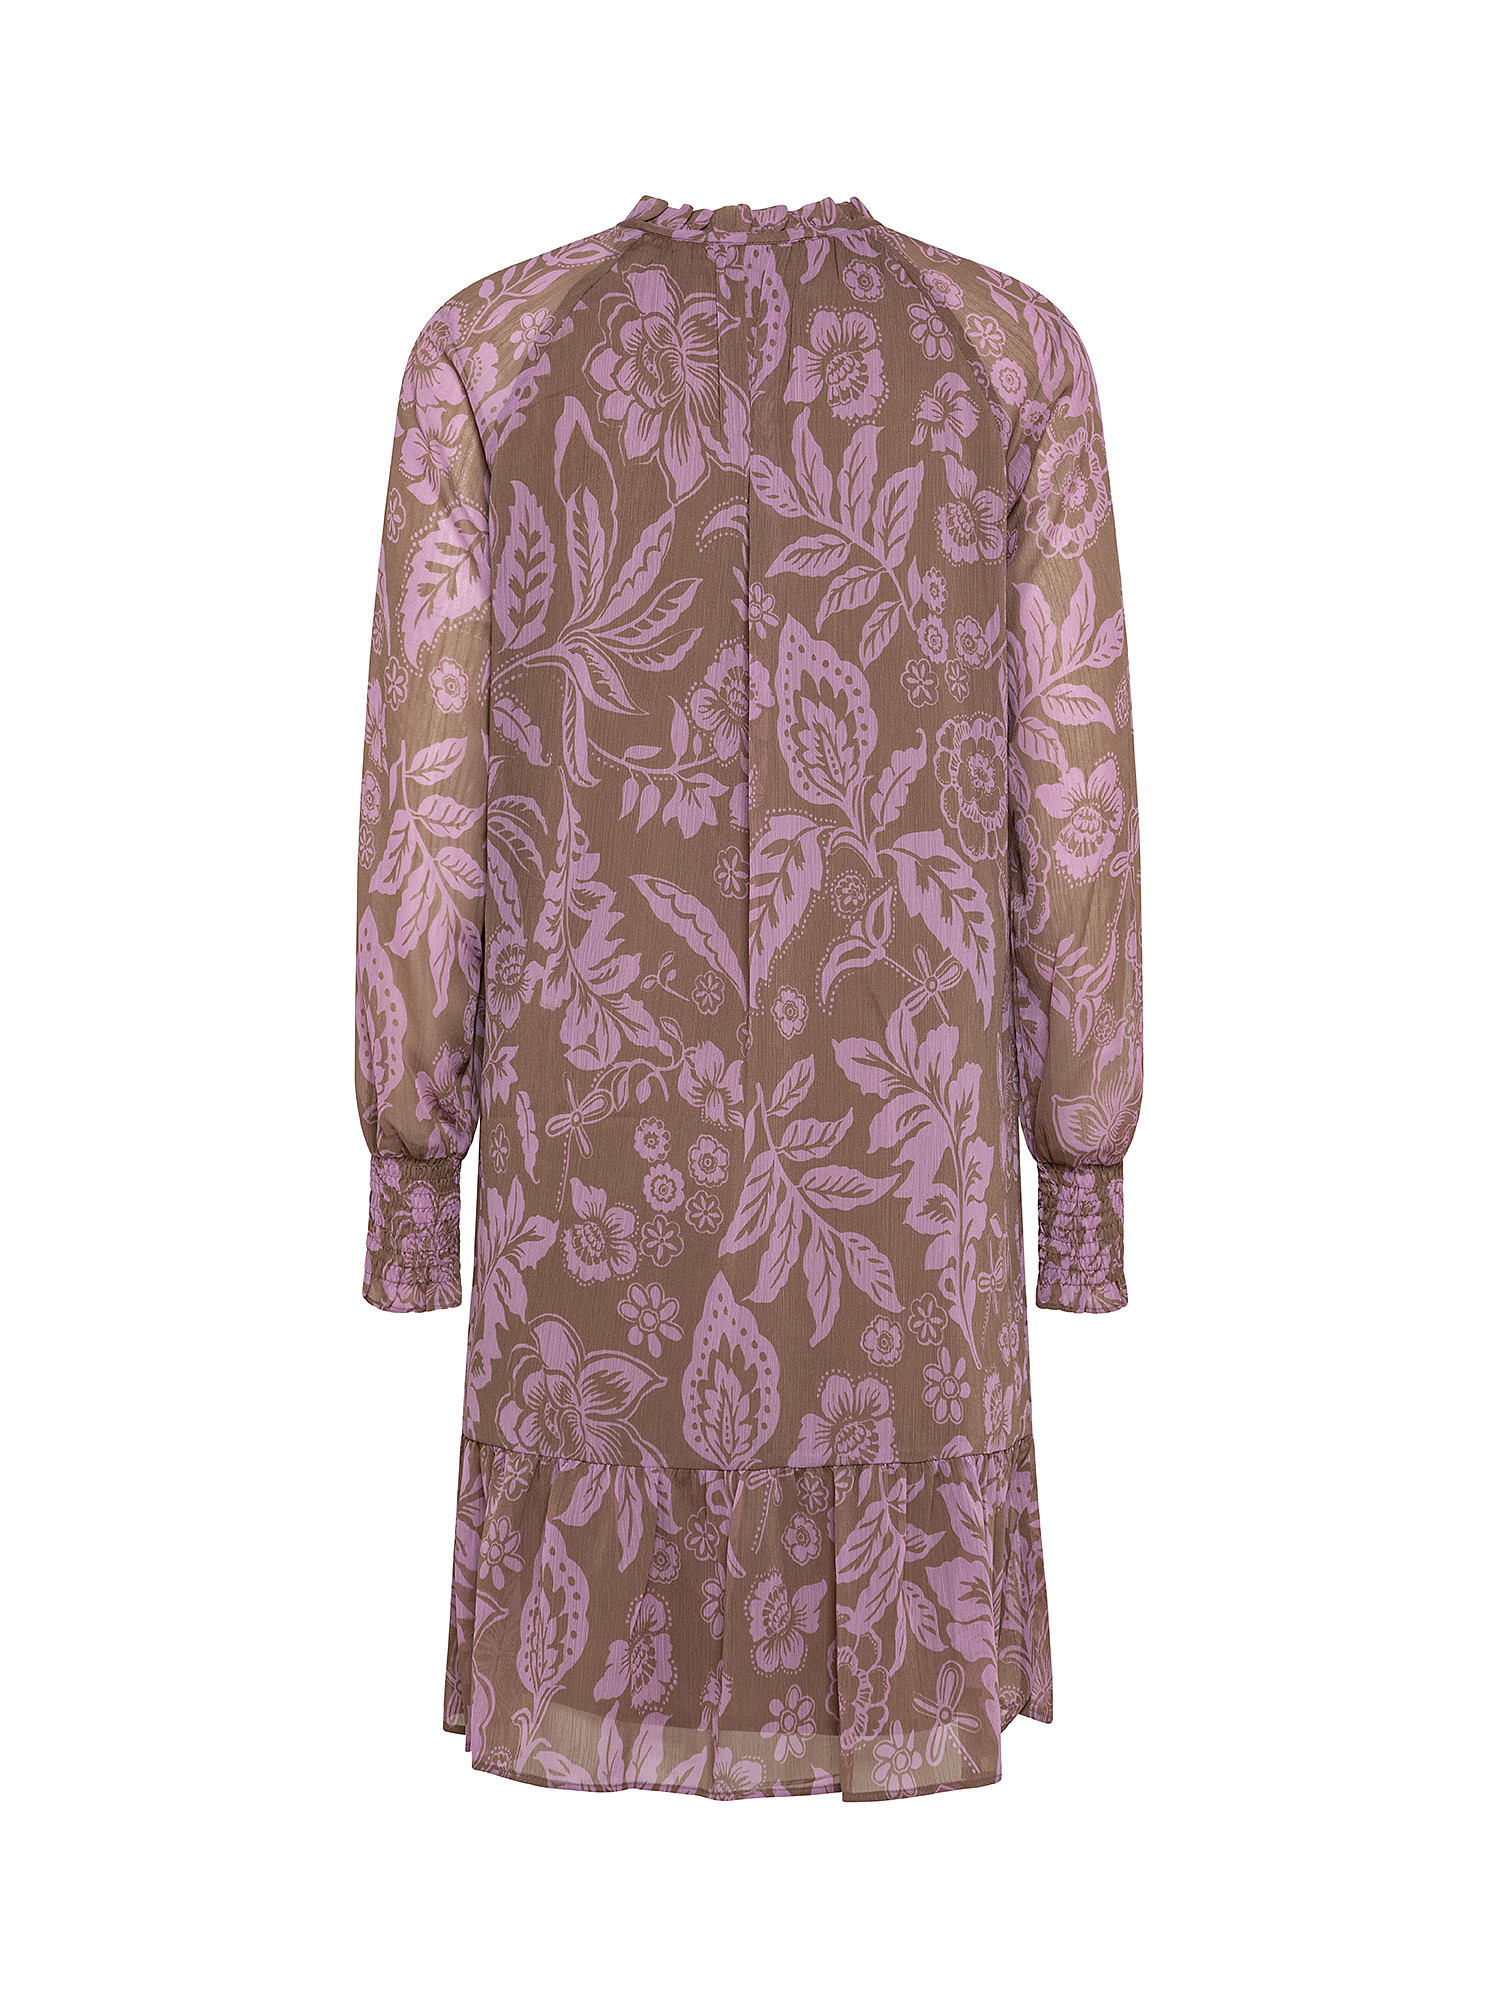 Floral patterned dress, Taupe Grey, large image number 1